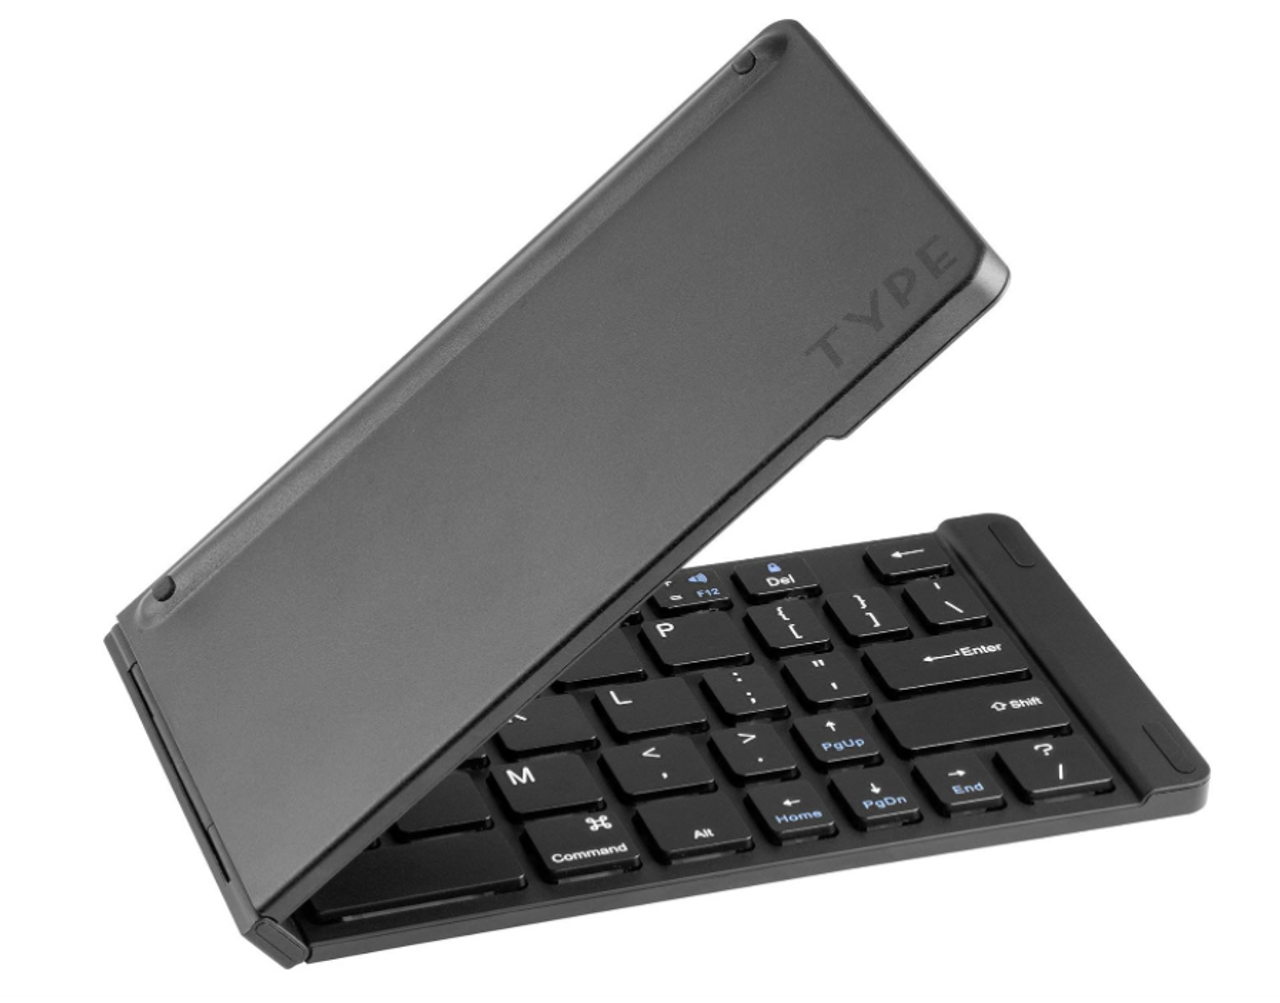 Portable Keyboard, Wireless Foldable Keyboard